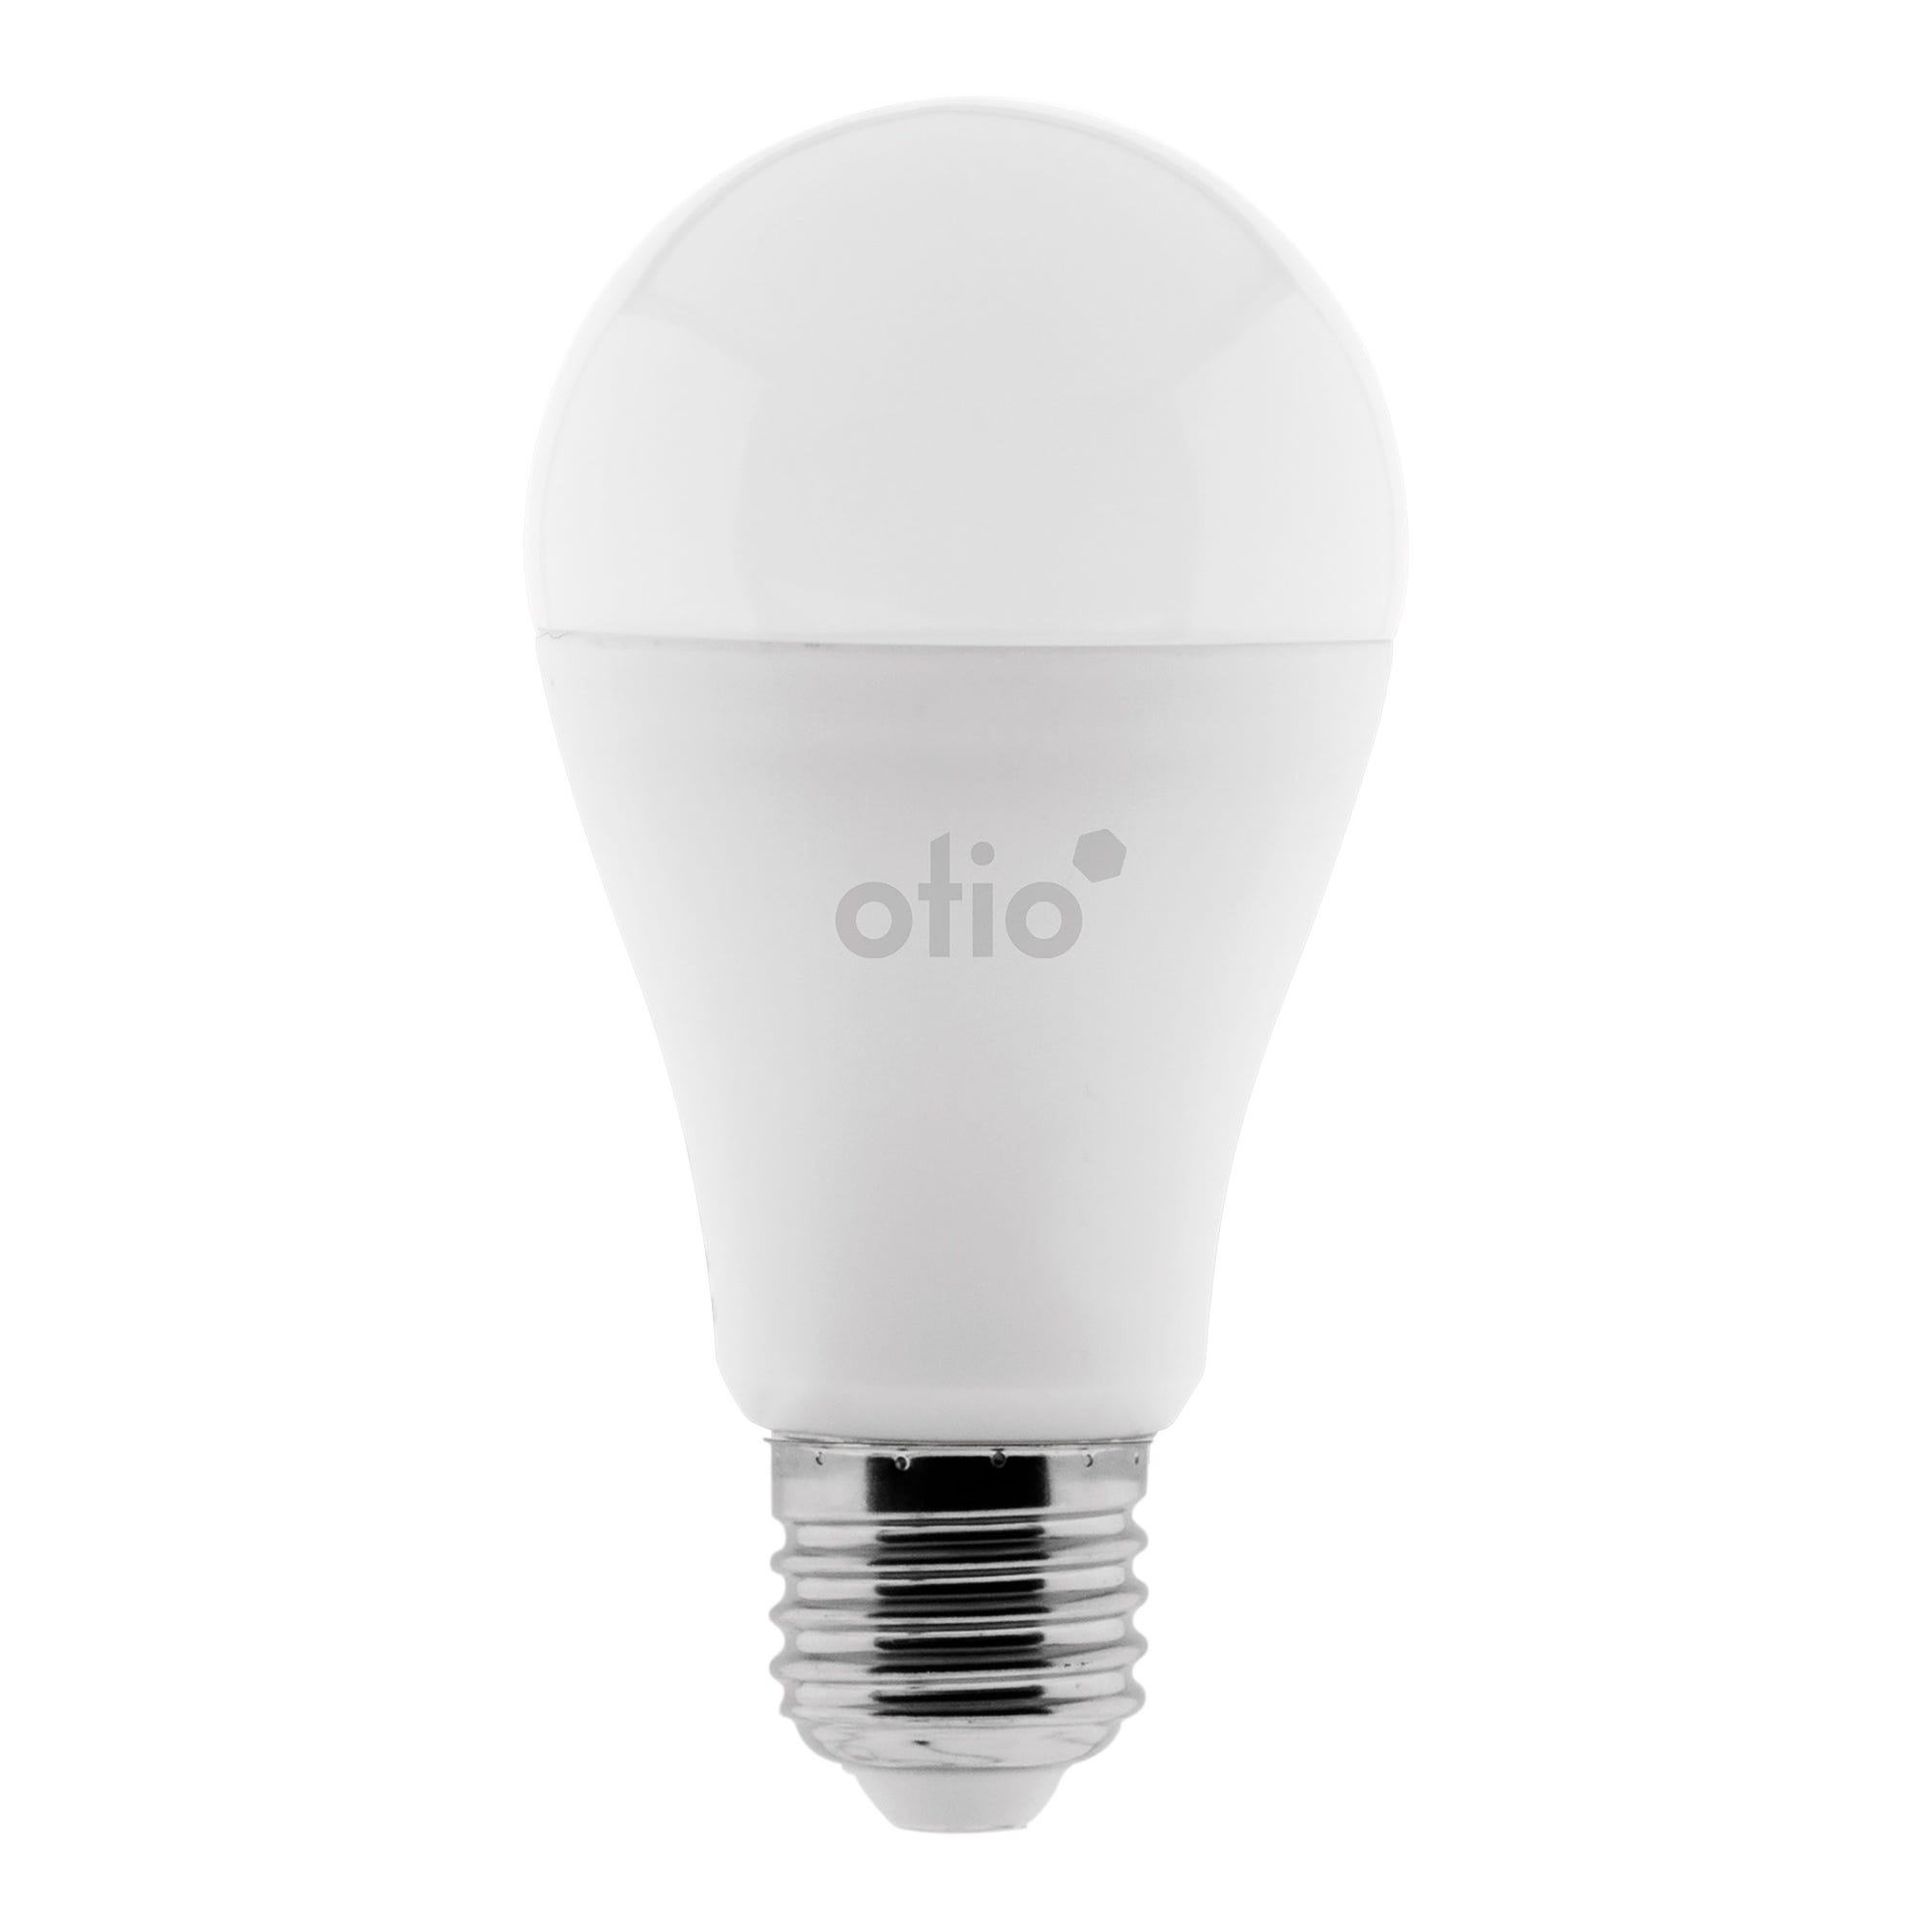 Ampoule connectée WIFI LED E27 10W RVB complet - Otio 0